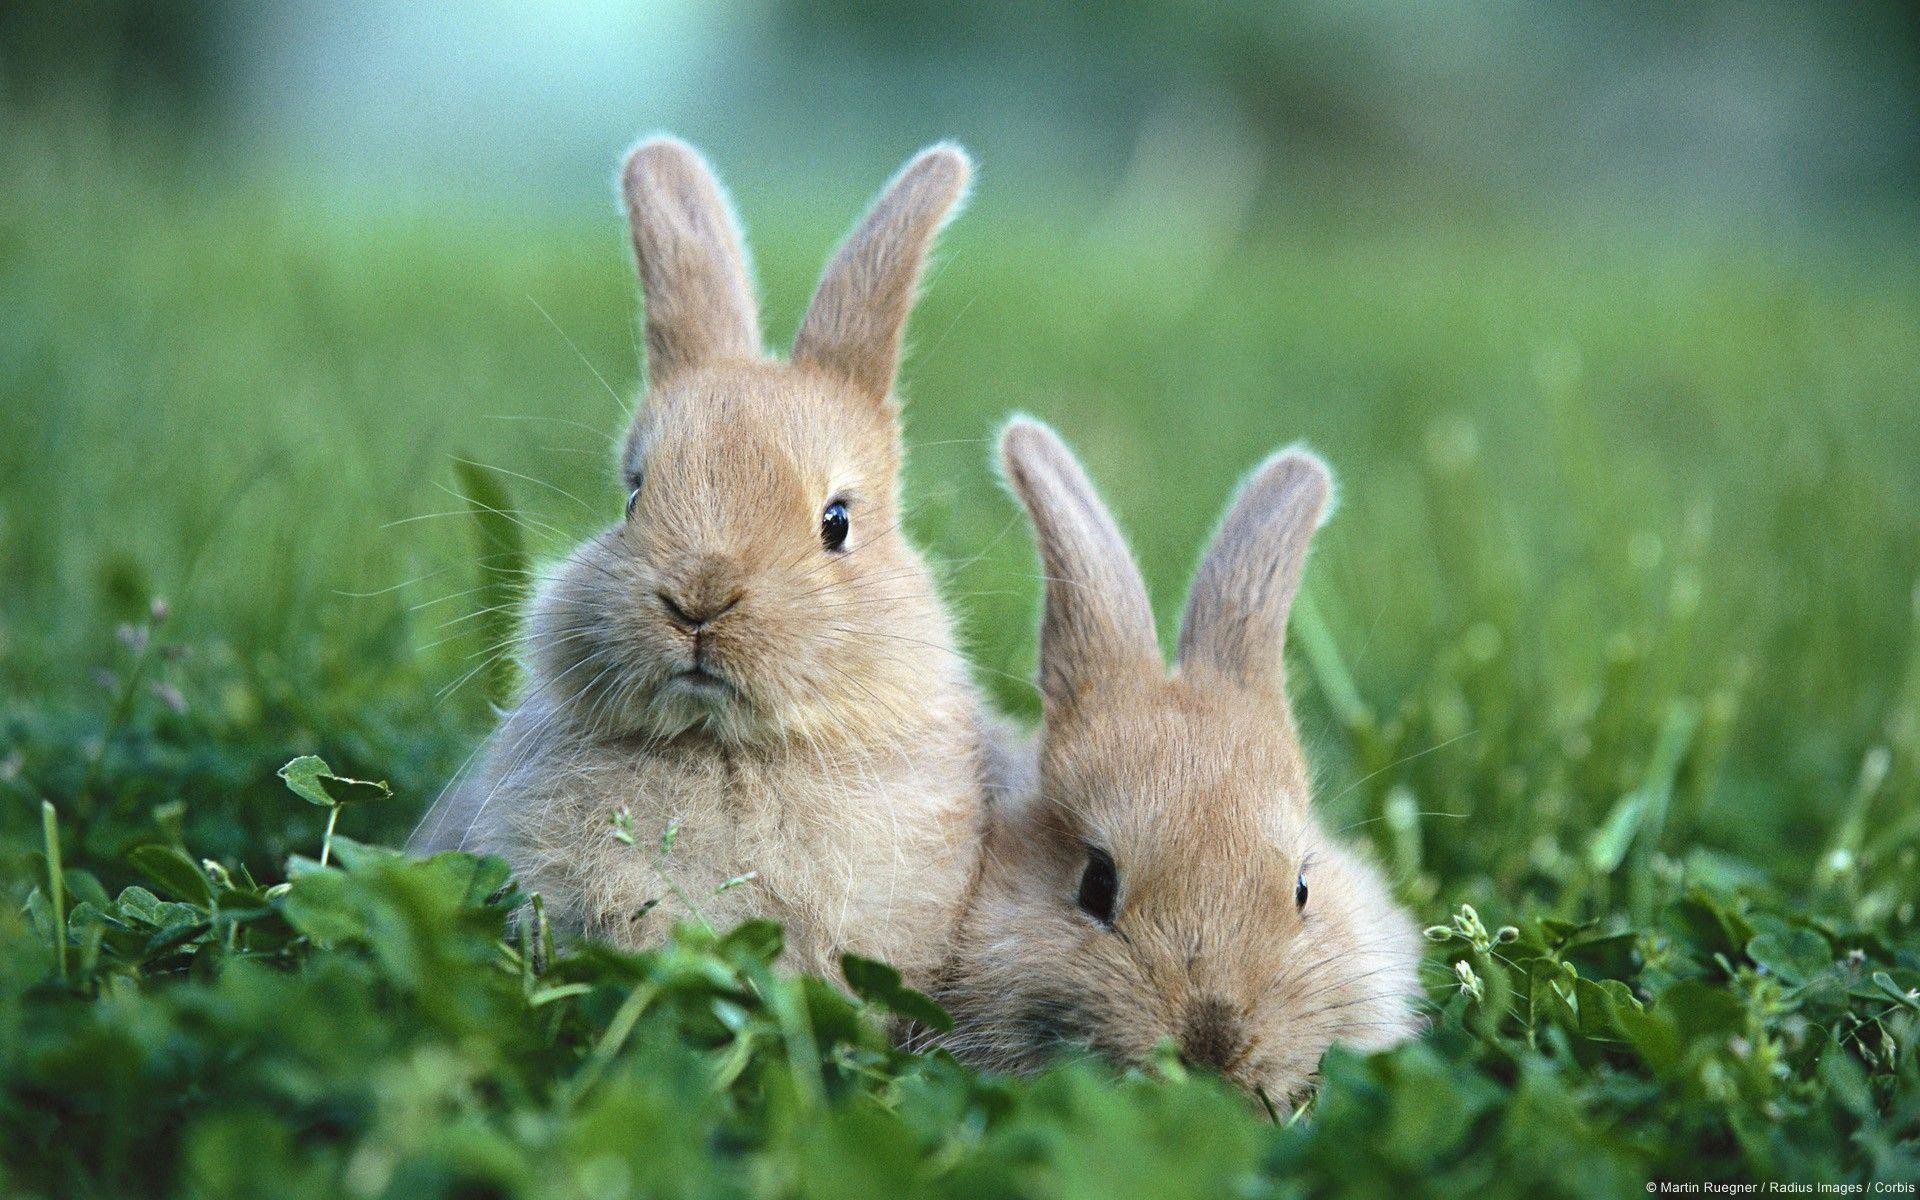 fond d'écran lapin,lapin,lapin domestique,lapins et lièvres,lièvre,herbe